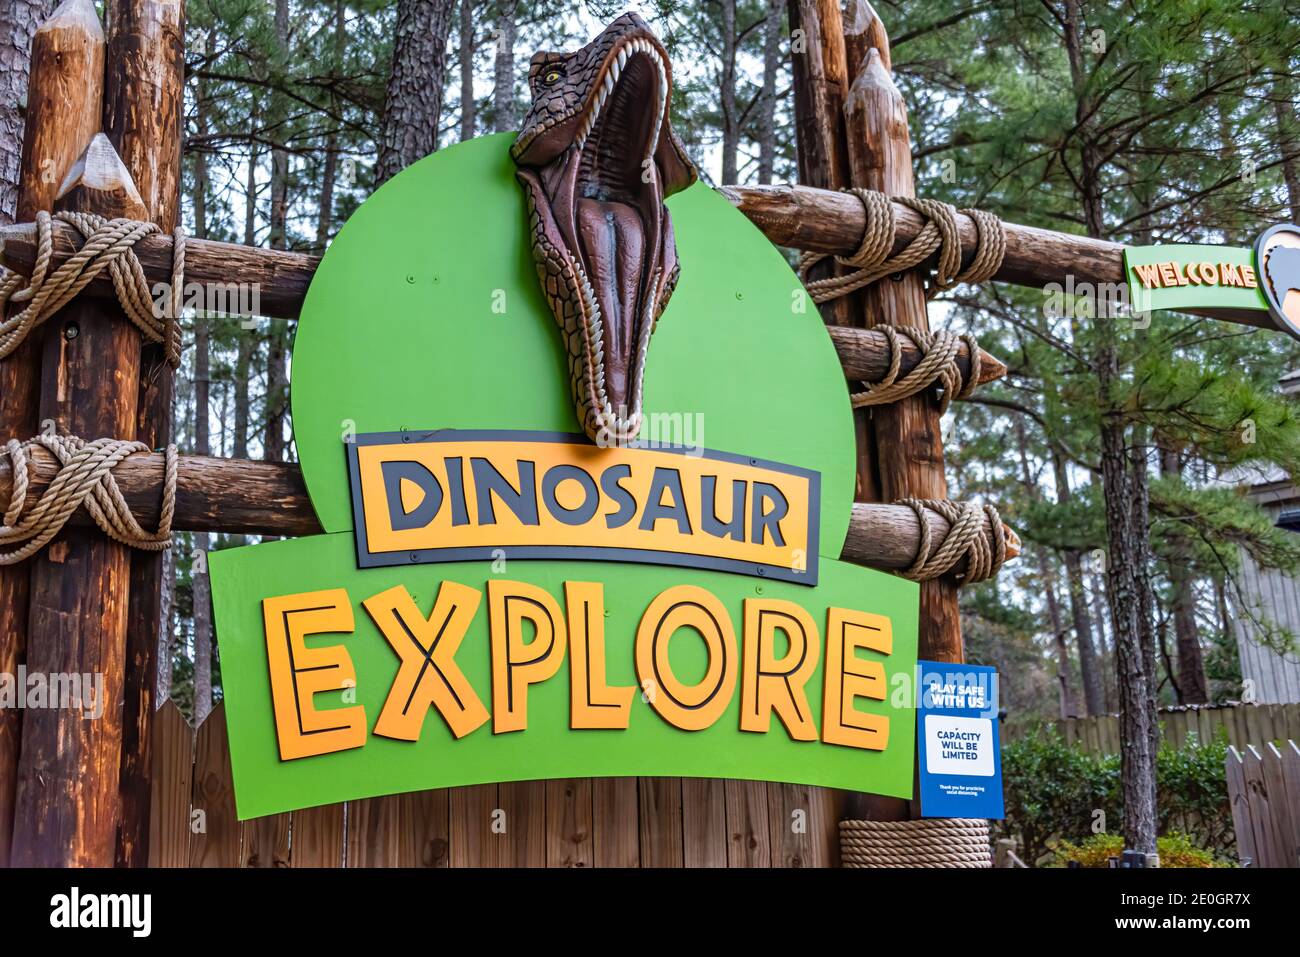 Entrée à l'attraction Dinosaur Explore, avec des dinosaures interactifs grandeur nature, au parc de Stone Mountain à Atlanta, en Géorgie. (ÉTATS-UNIS) Banque D'Images